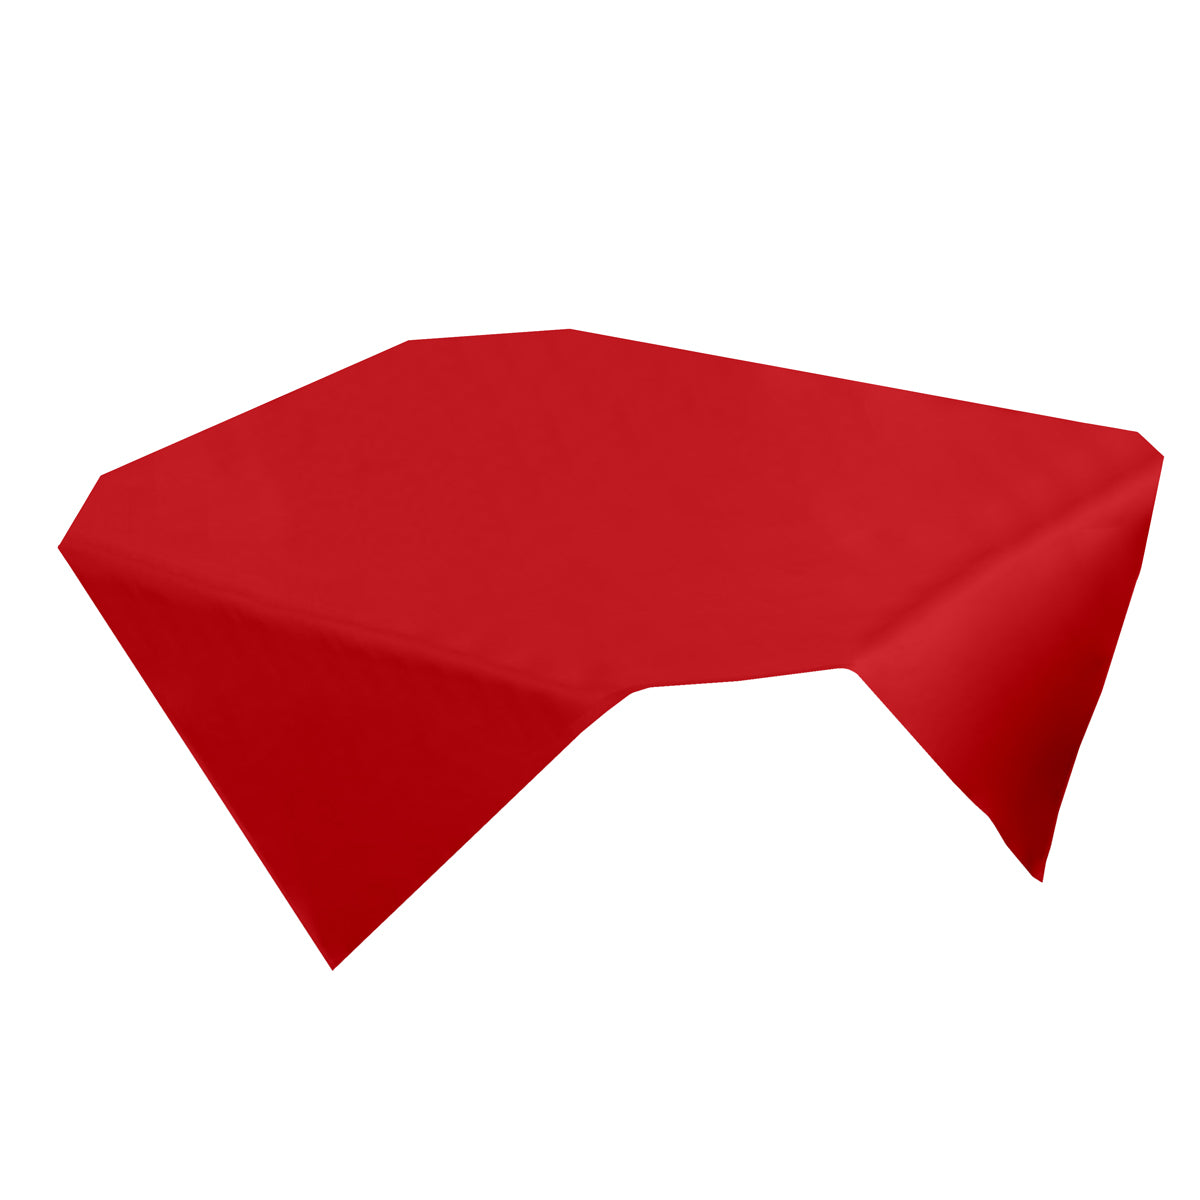 (100 stk.) Vienna Damask Center Blanket - 80 x 80 cm - Fire Red